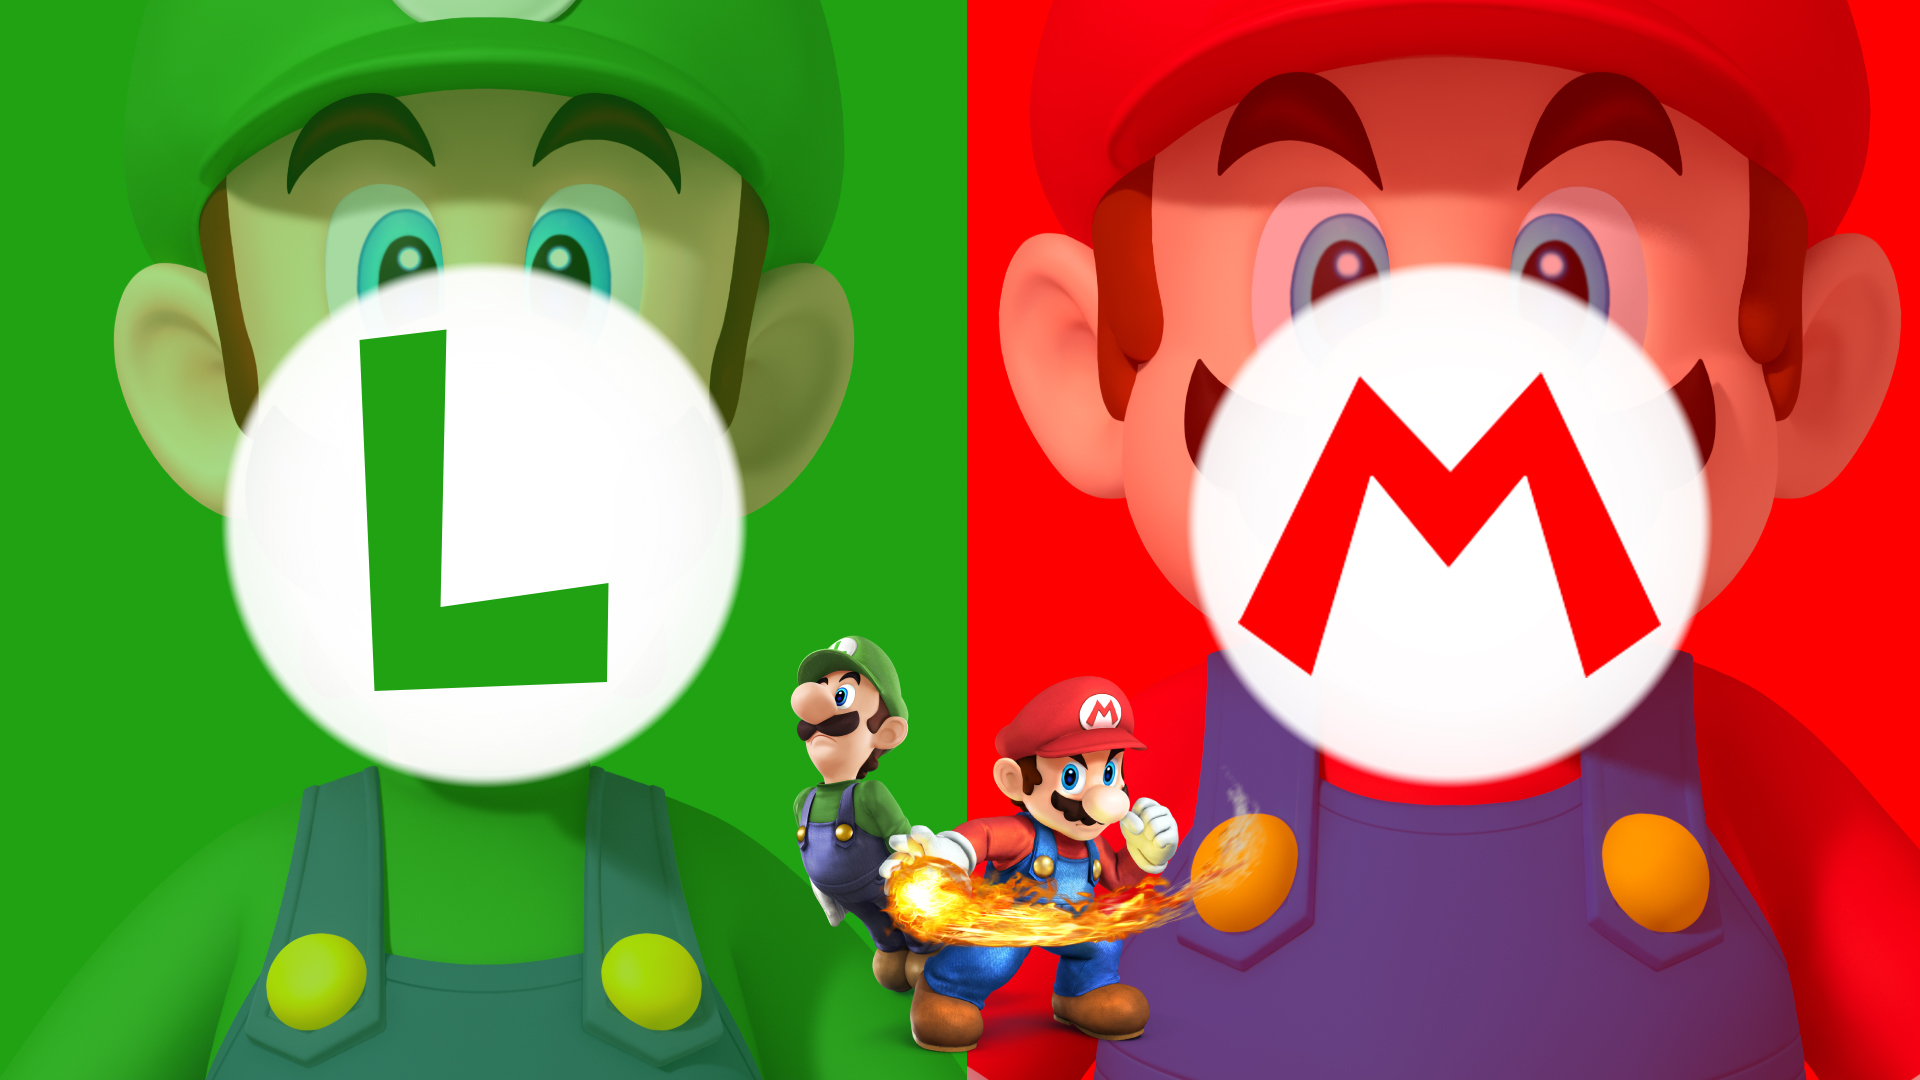 Los Mejores Wallpaper De Mario Bros Mario Y Luigi Fondos De Mario Bros ...